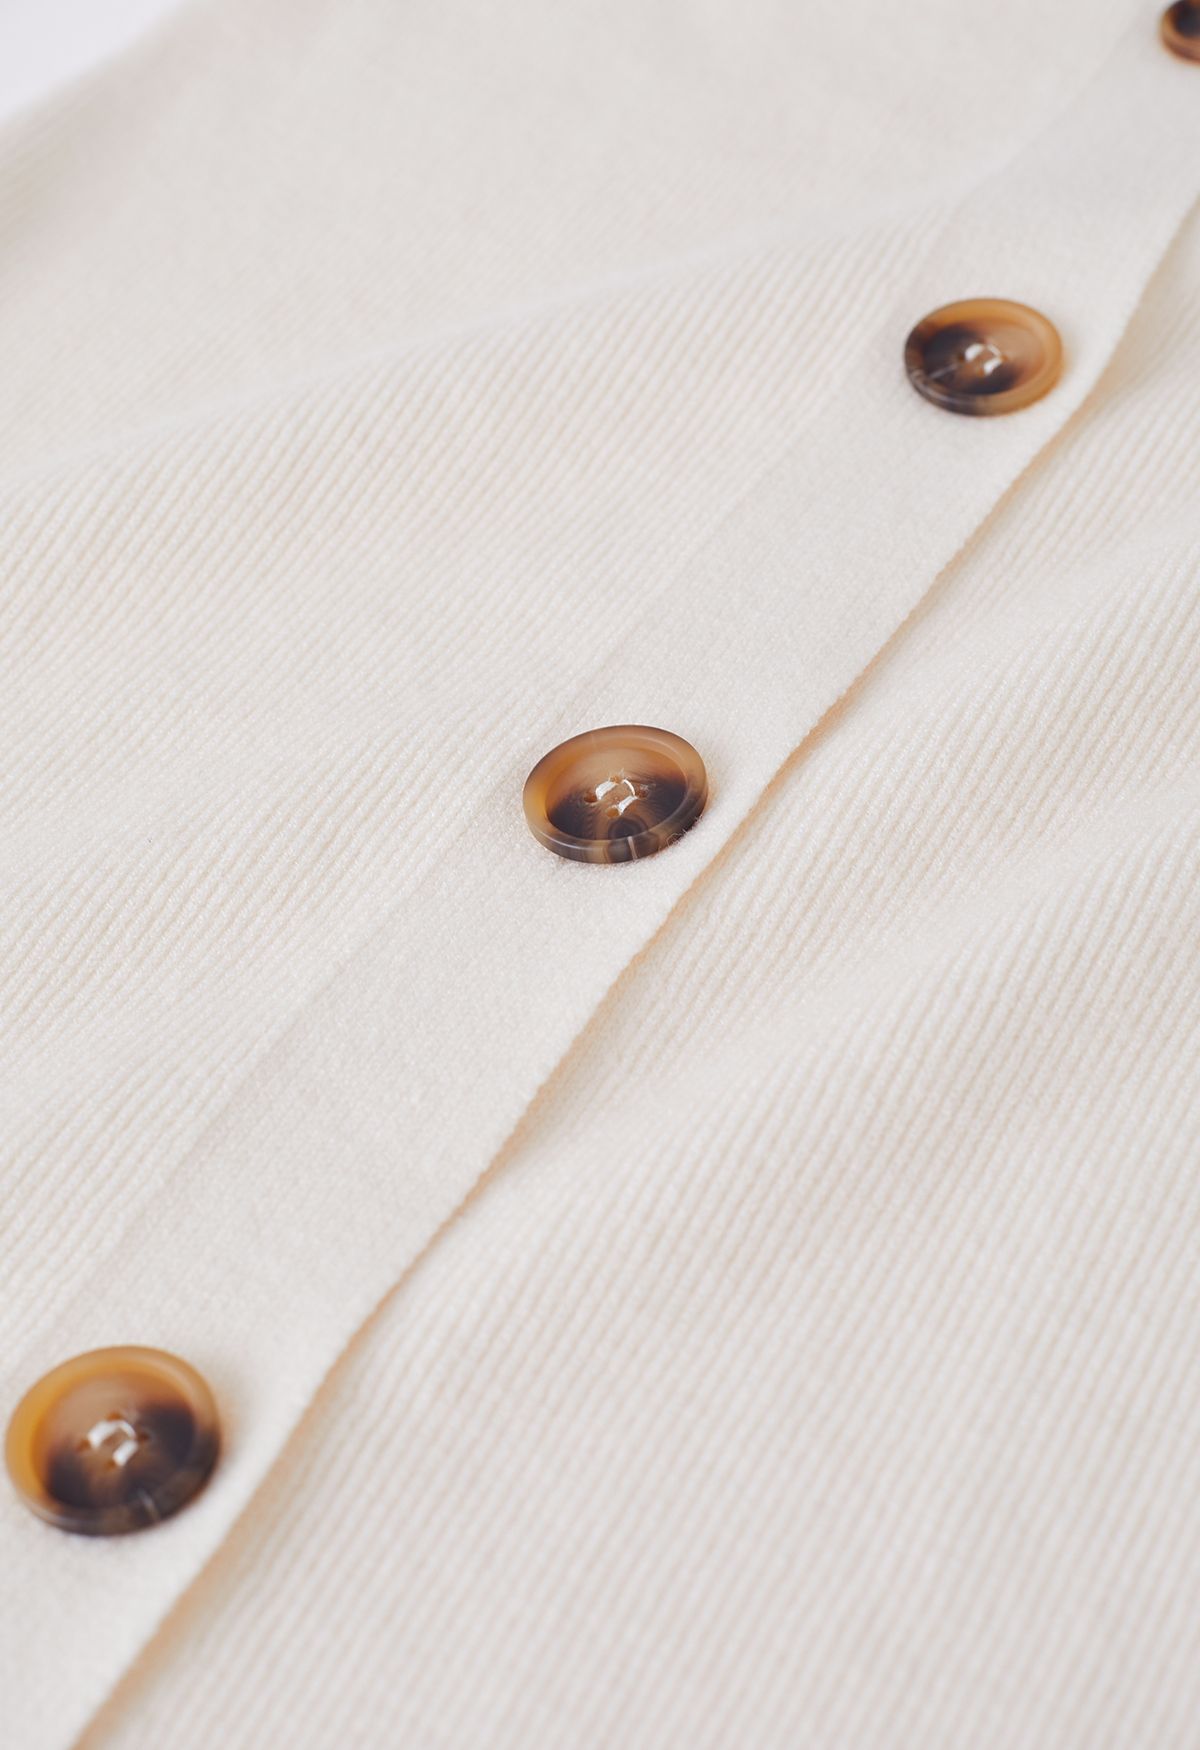 V-Neck Button Down Knit Midi Dress in Cream - Retro, Indie and Unique ...